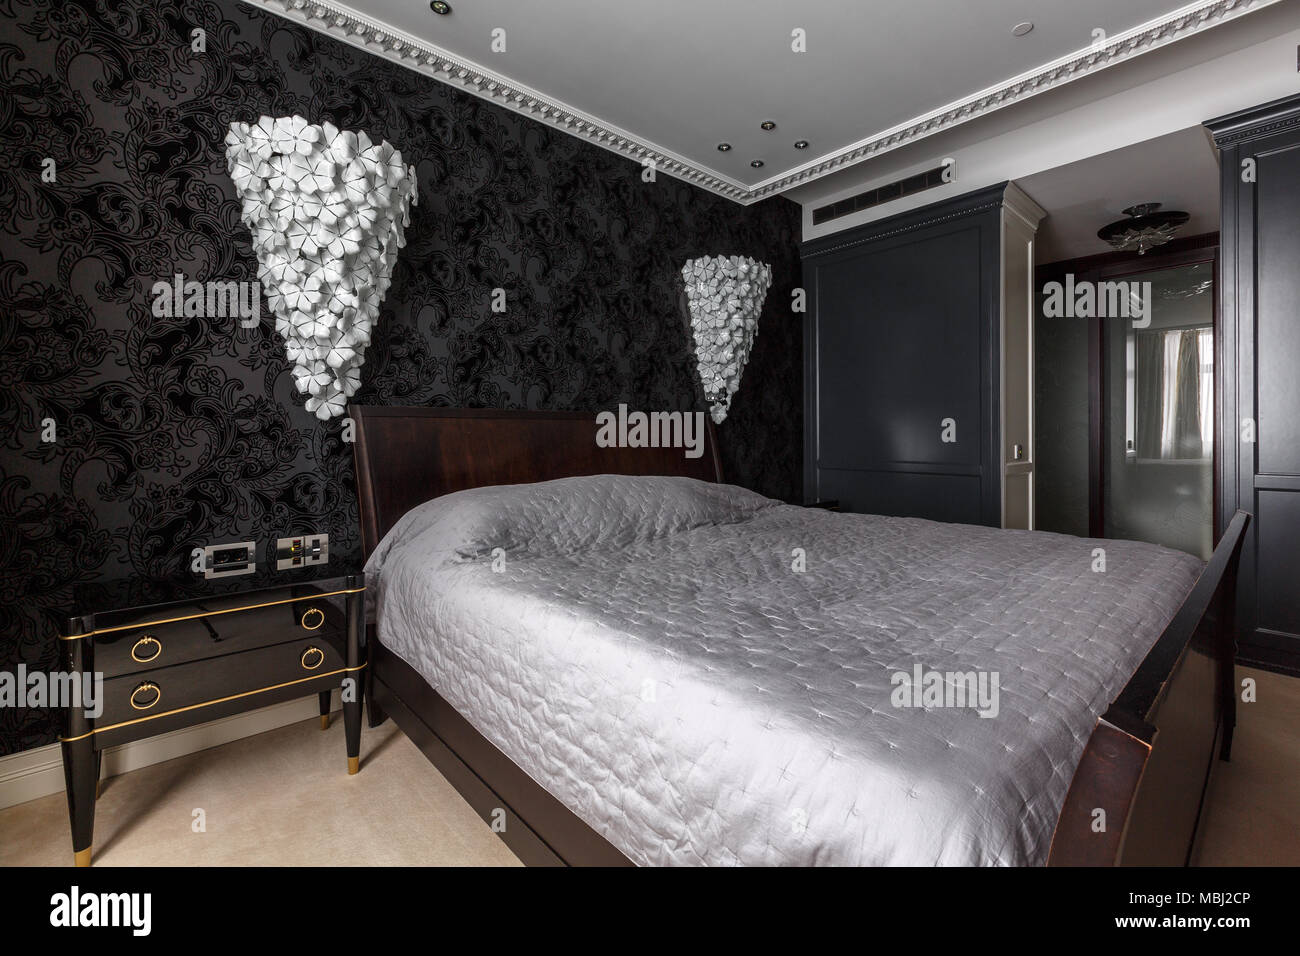 Luxuriose Schlafzimmer Einrichtung In Dunklen Farben